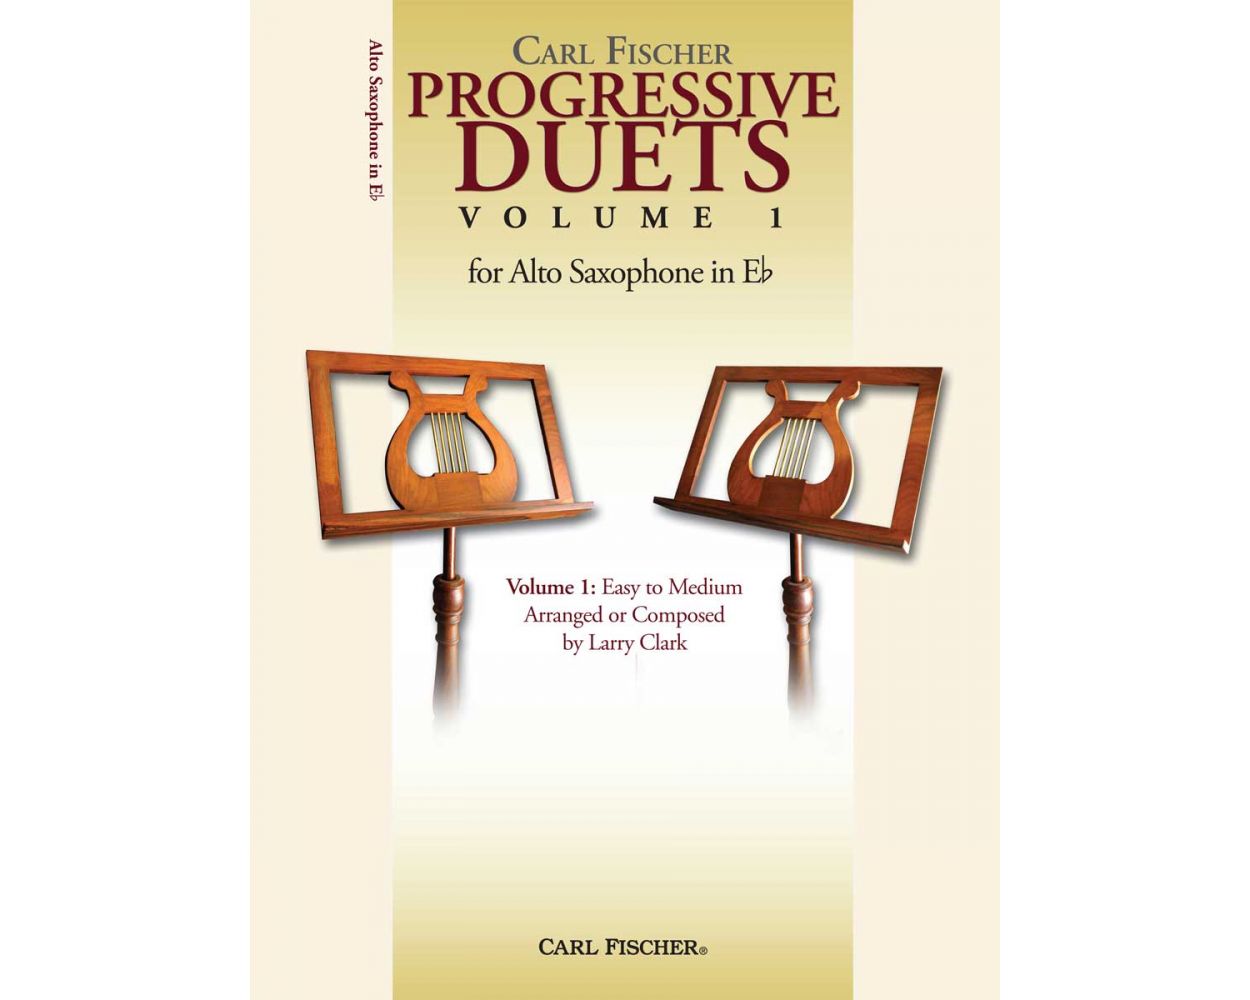 Progressive Duets Volume 1 for Alto Saxophone in Eb